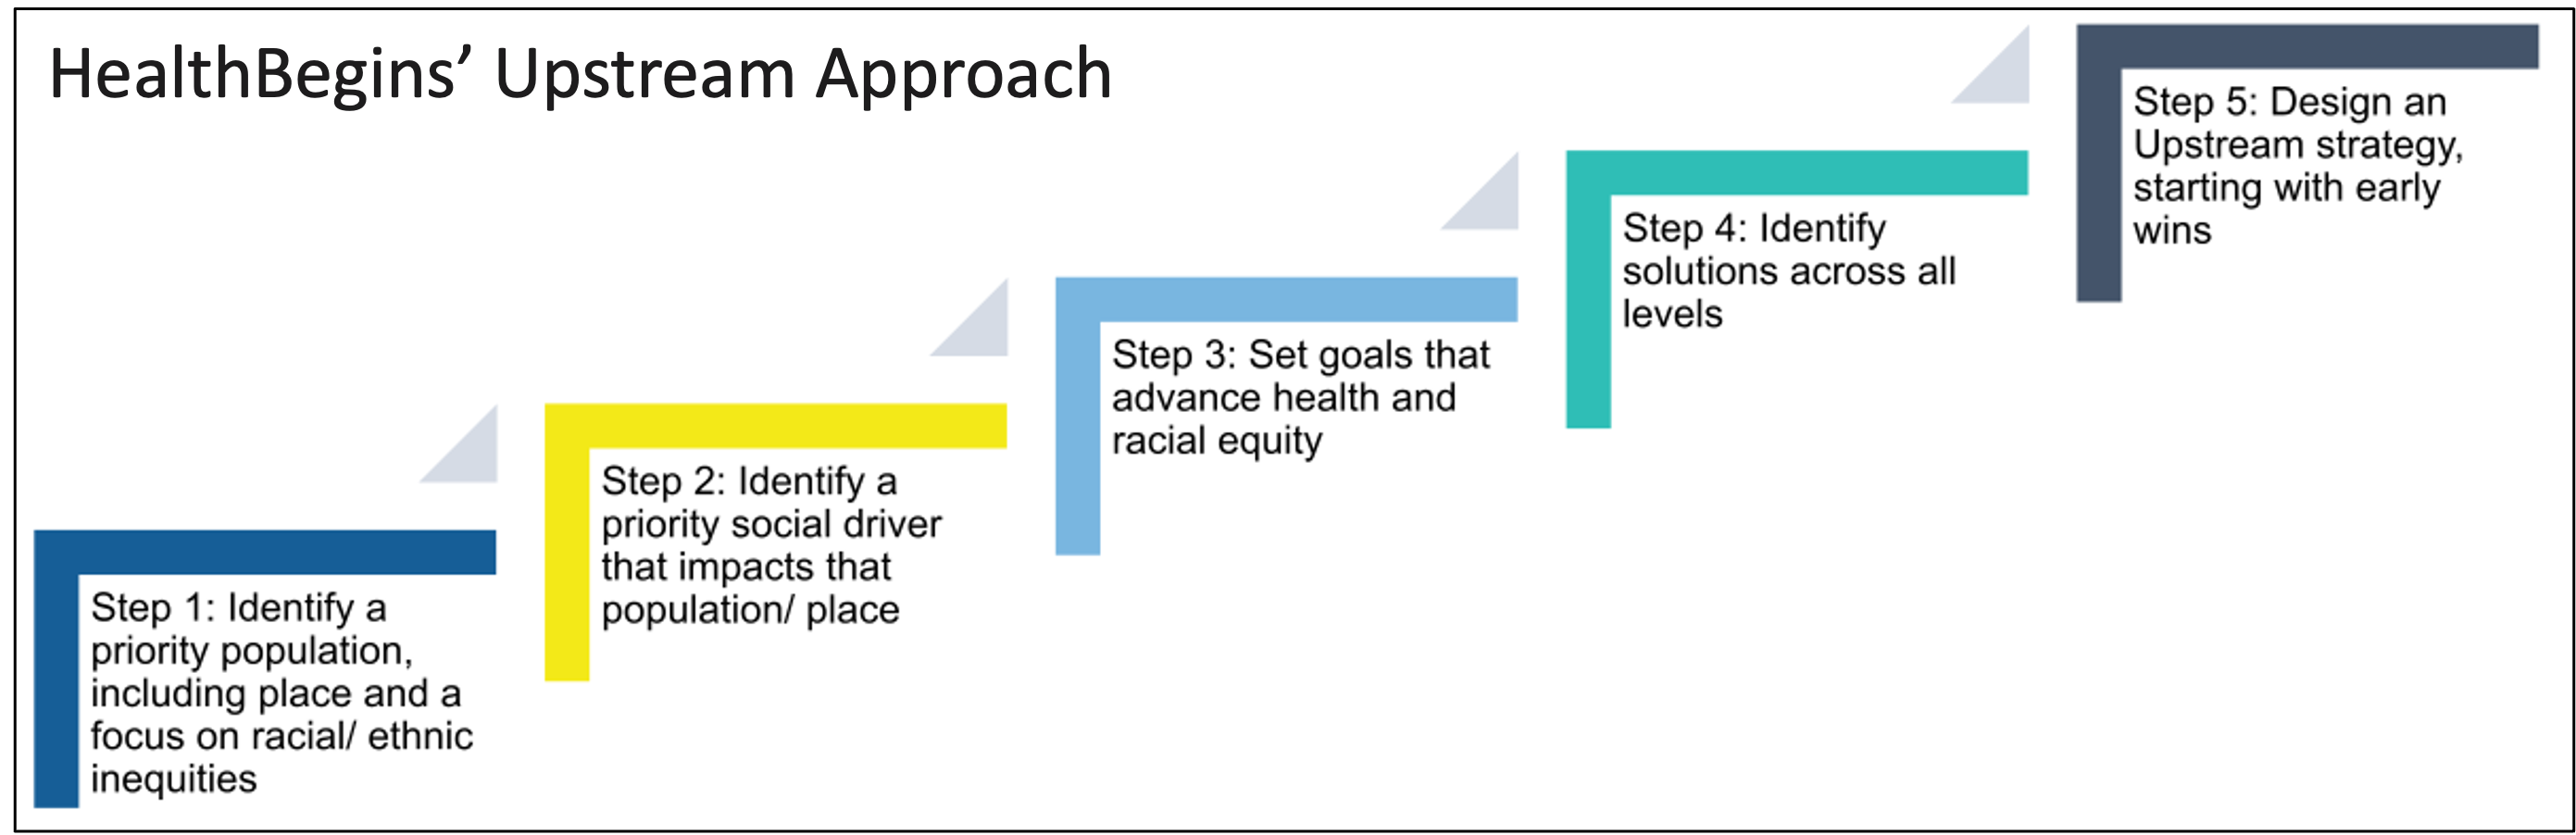 upstream approach steps